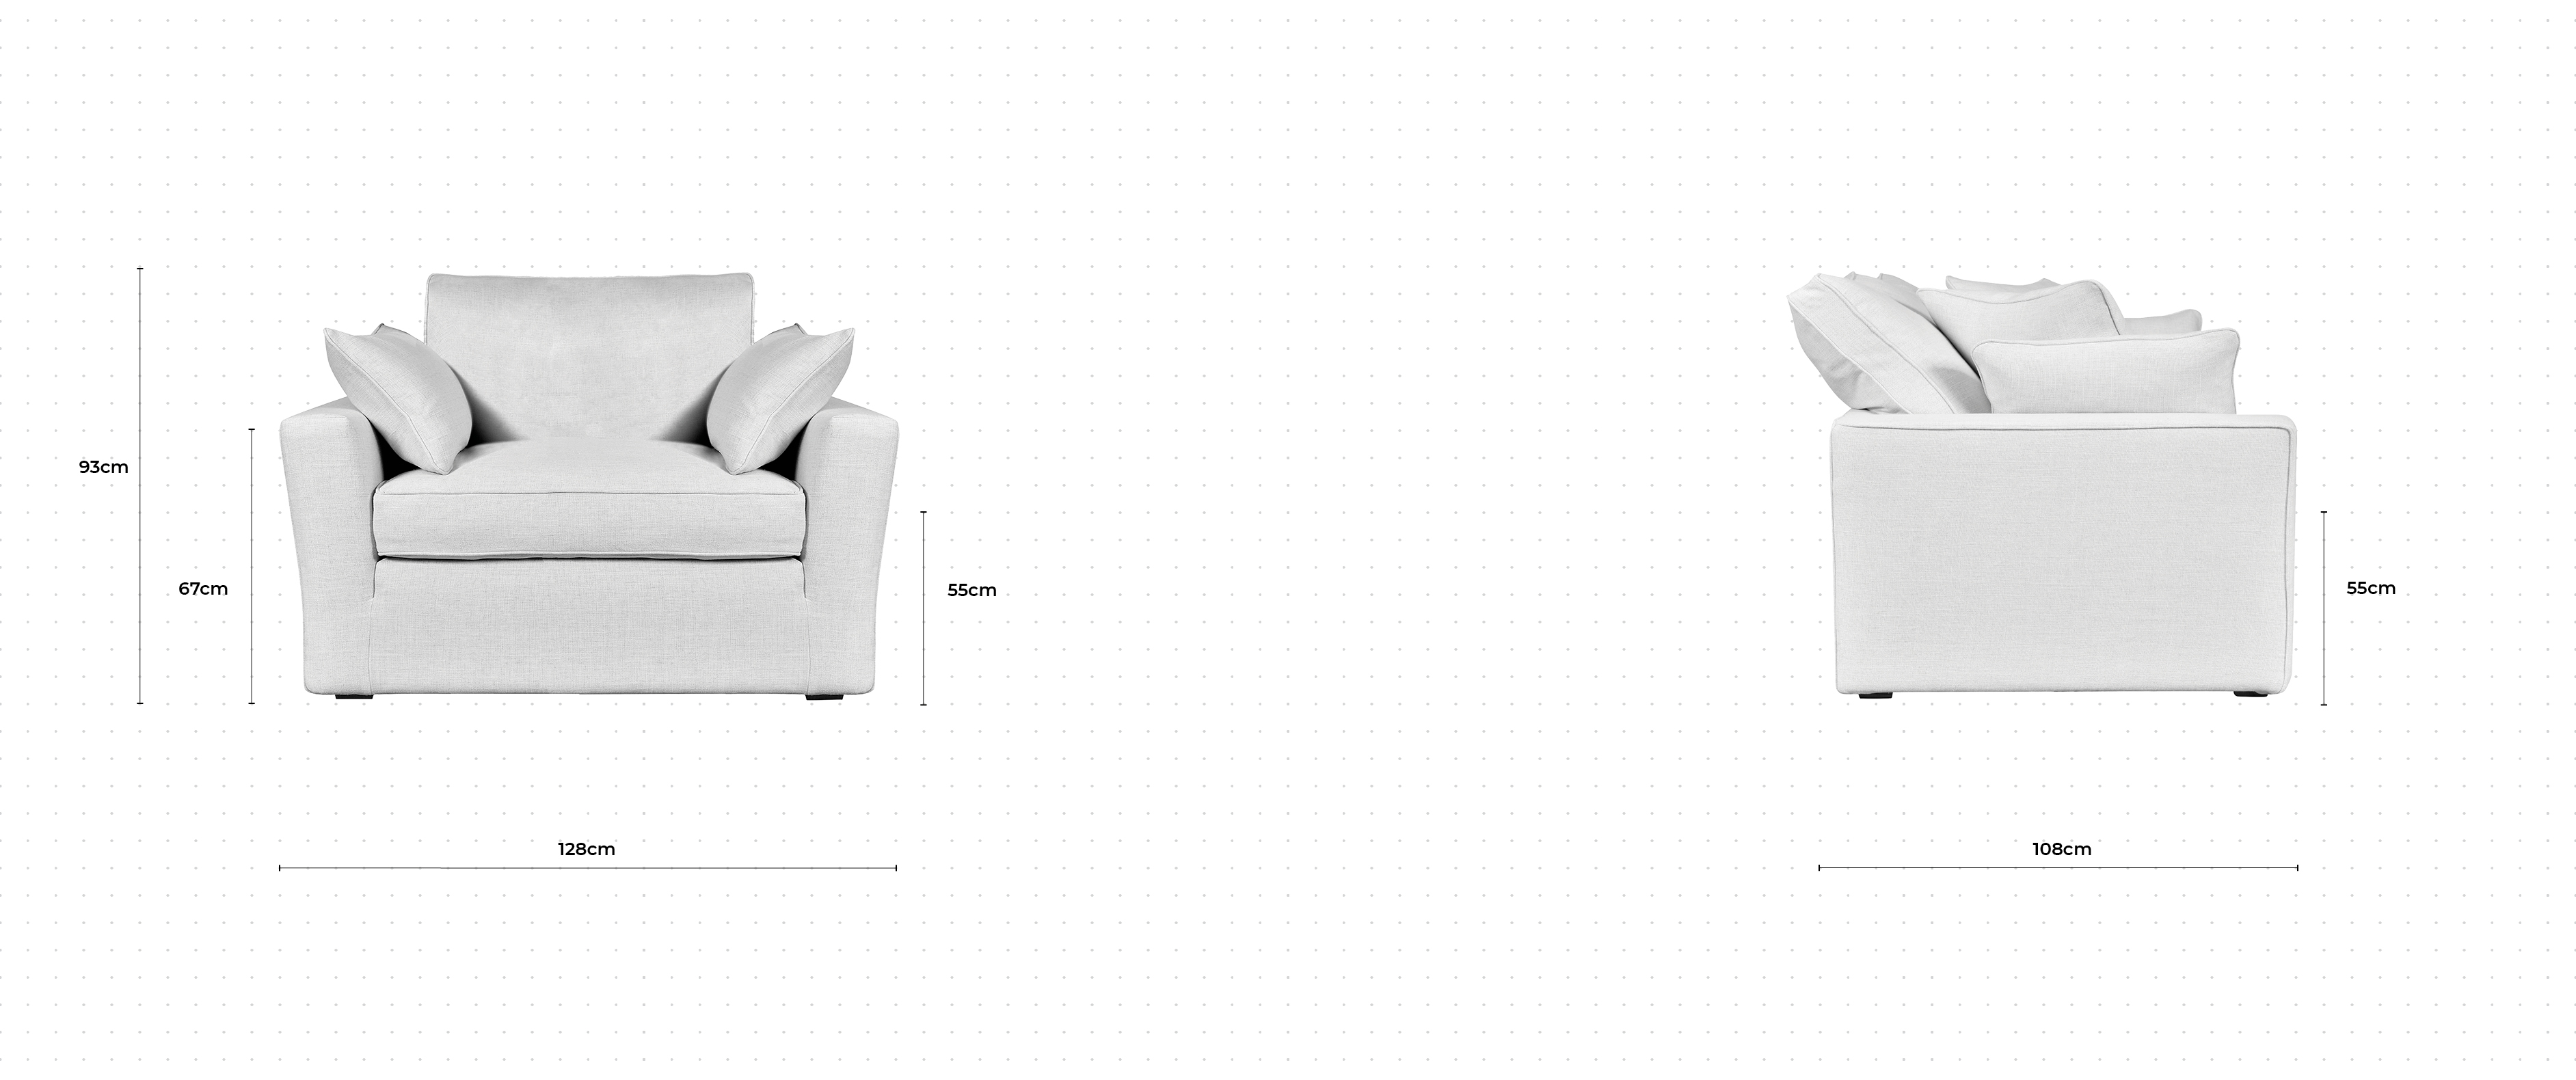 Caruso Armchair dimensions